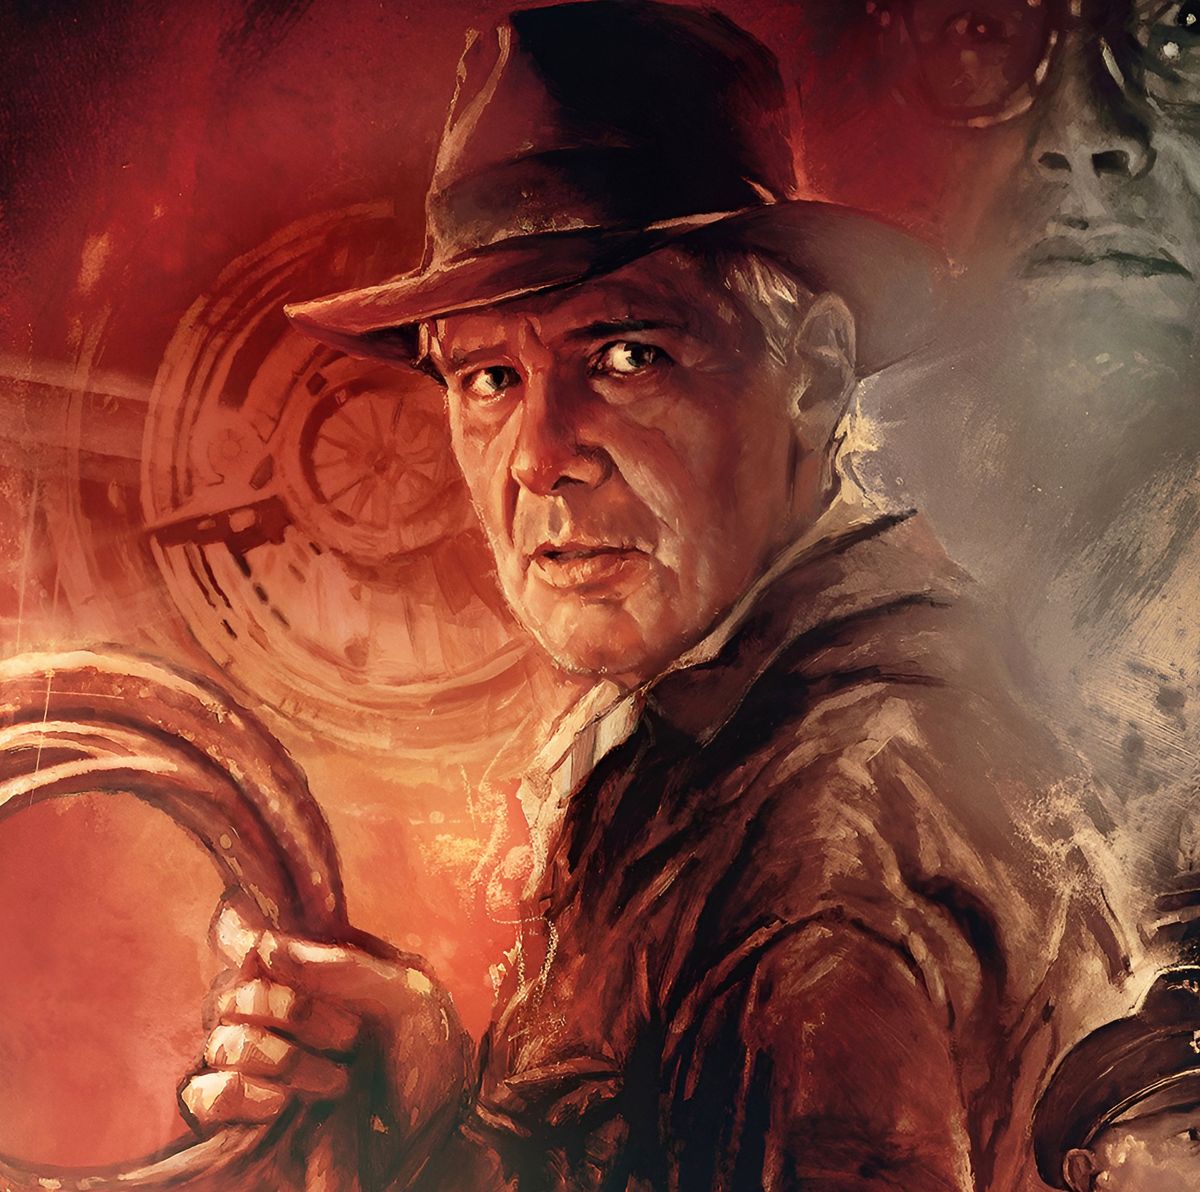 Conoces el origen y la historia del famoso sombrero de Indiana Jones?